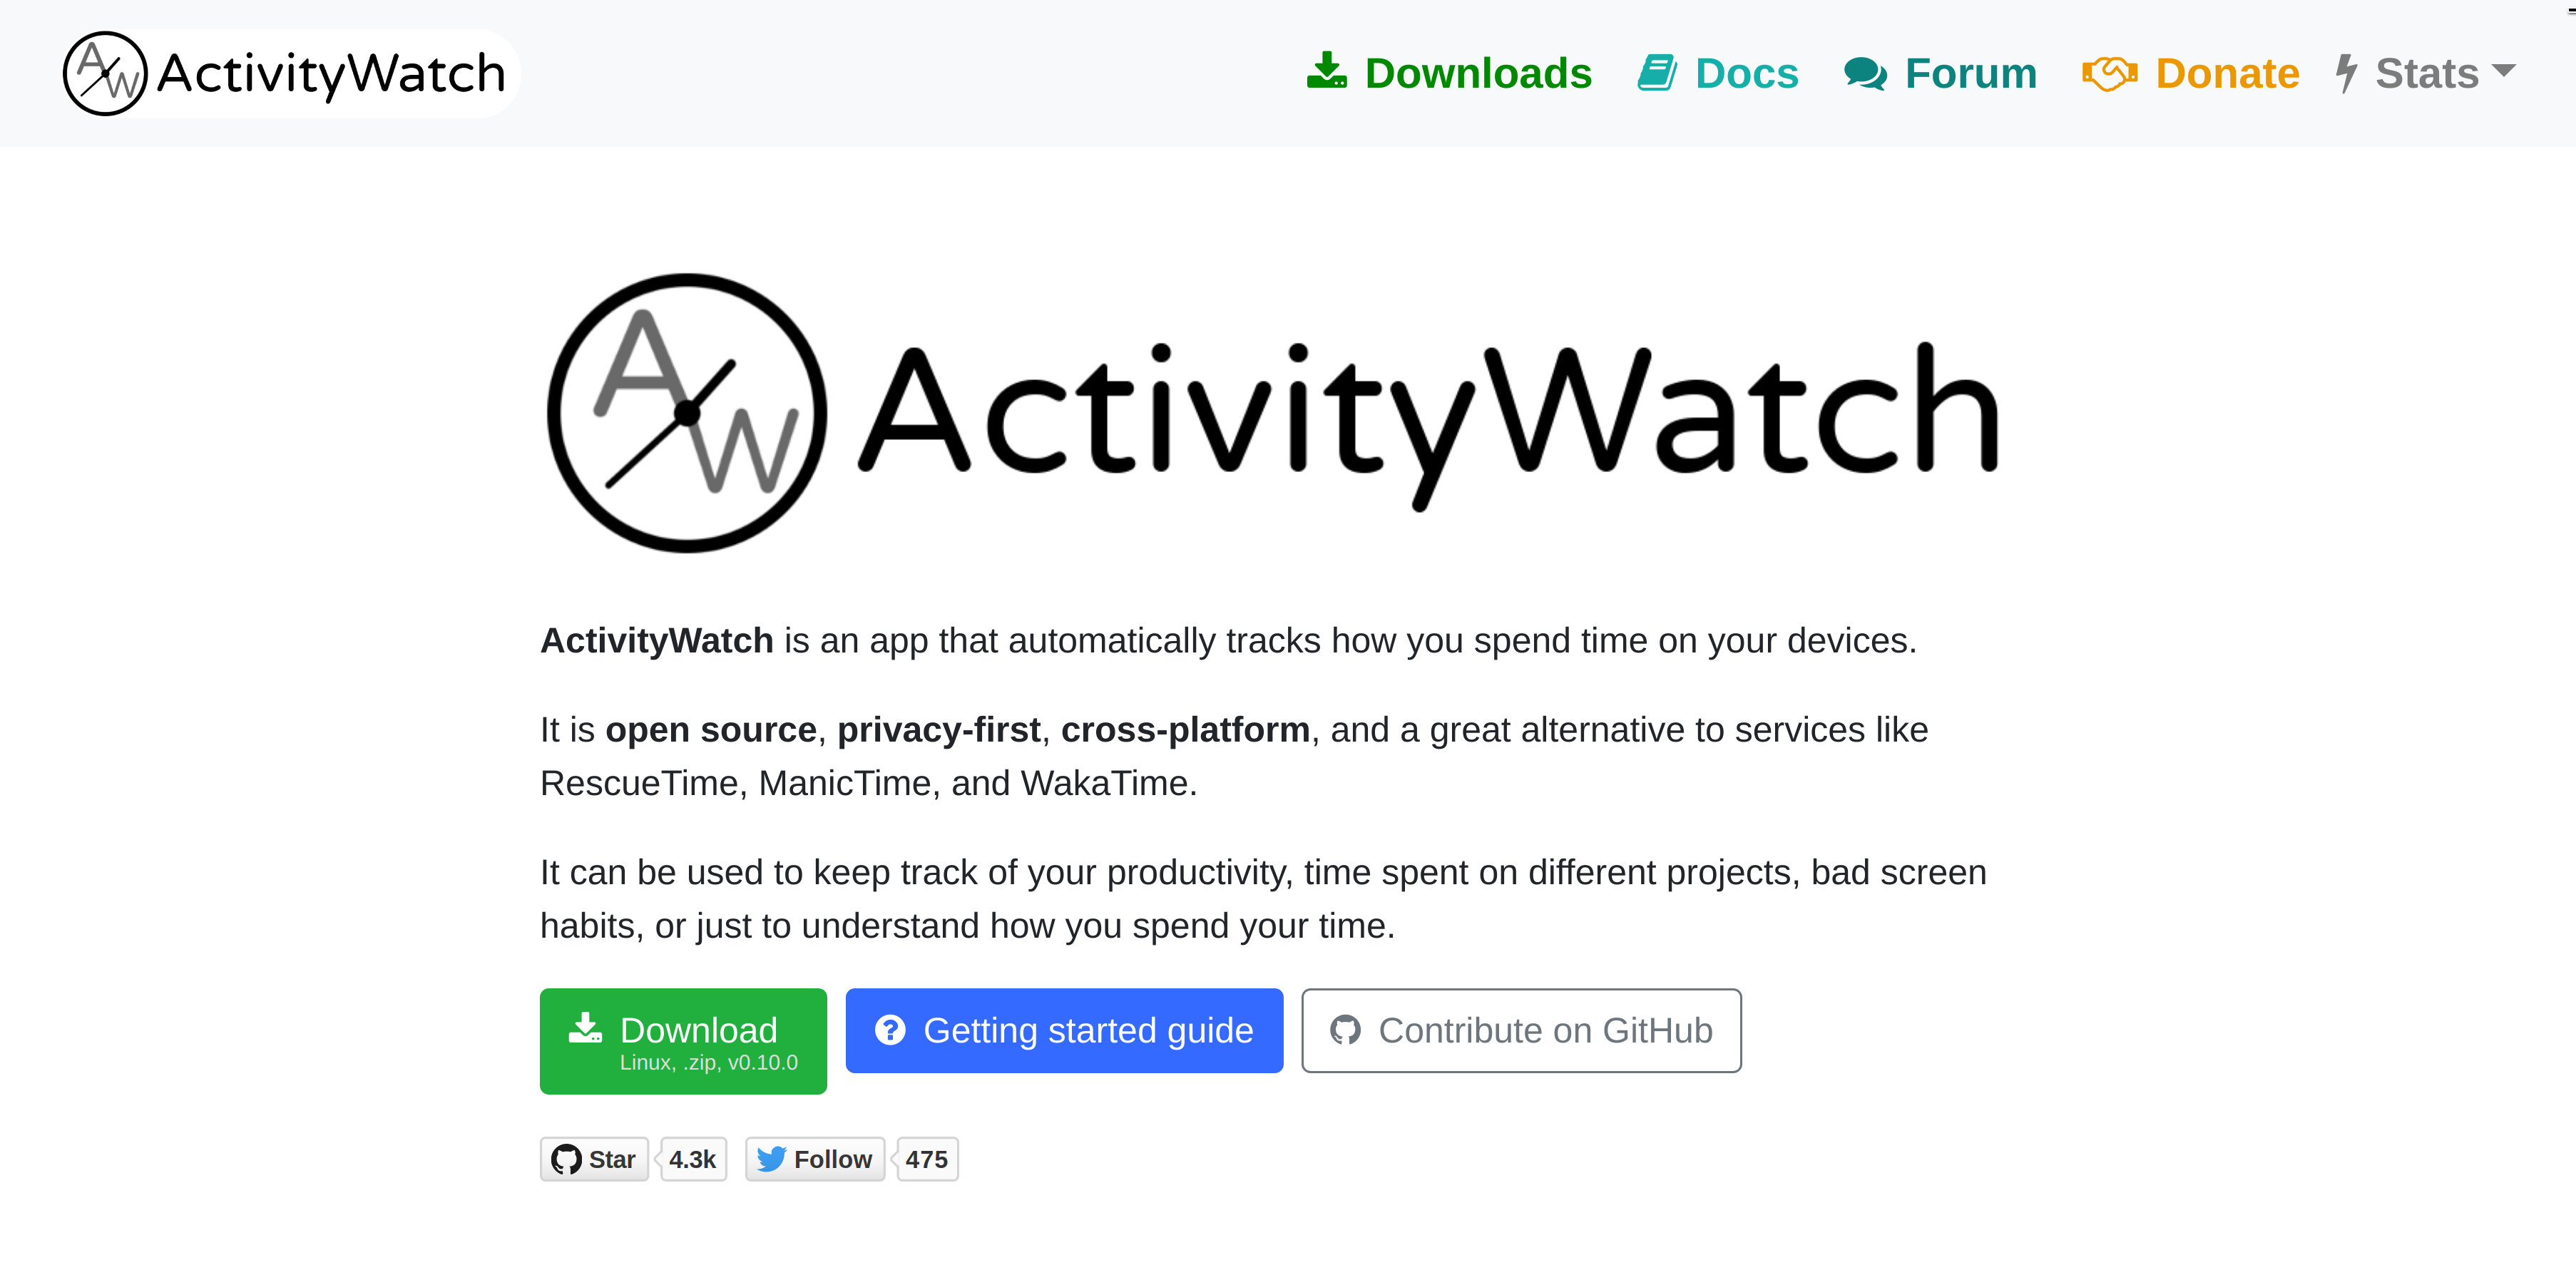 A screenshot of the ActivityWatch website